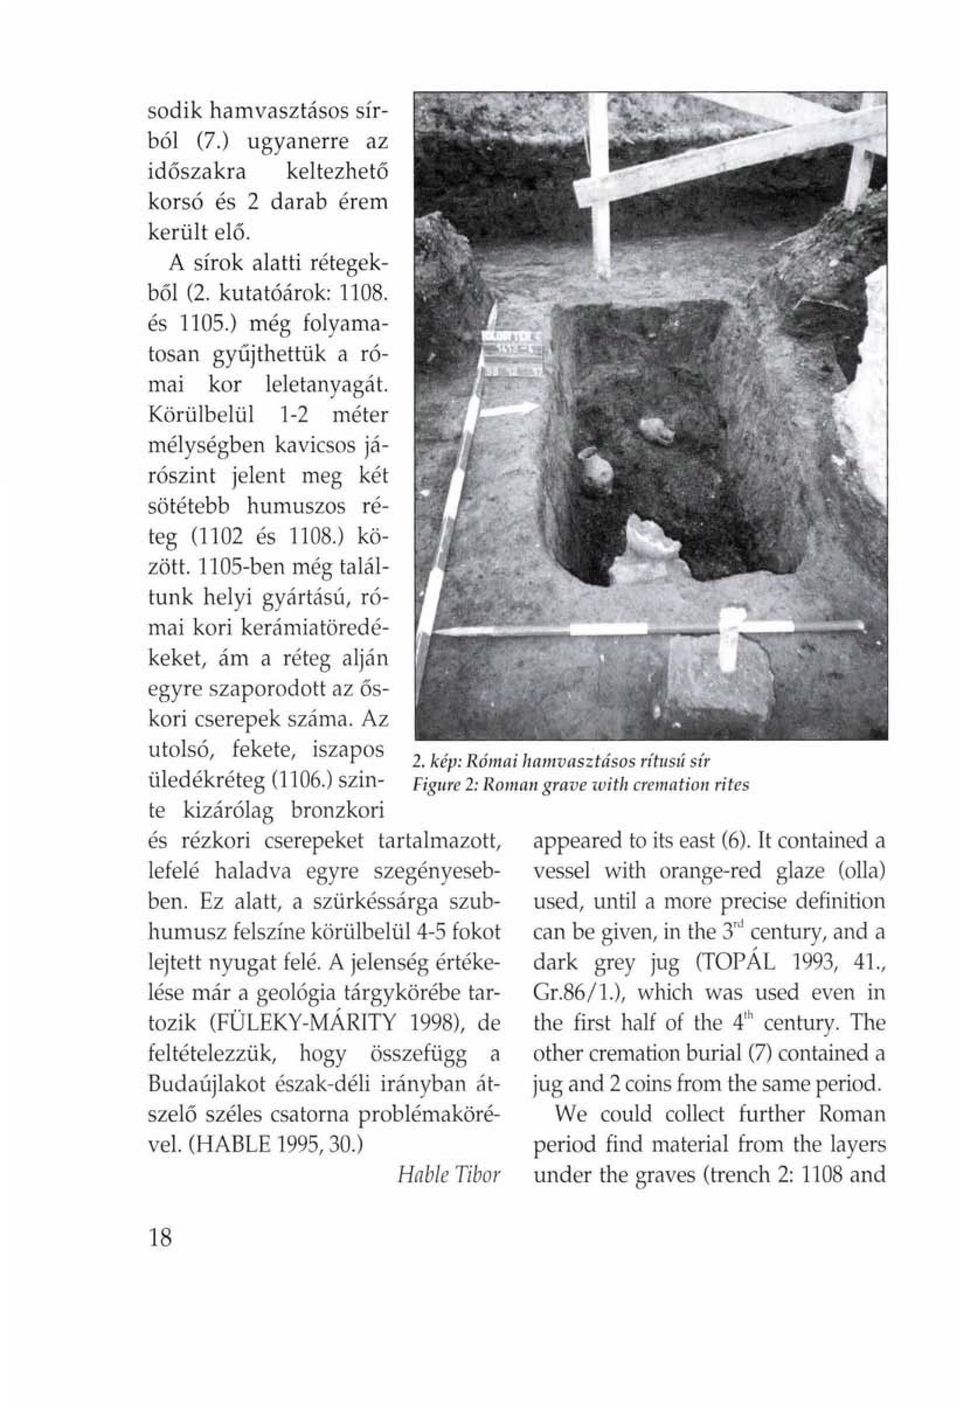 1105-ben még találtunk helyi gyártású, római kori kerámiatöredékeket, ám a réteg alján egyre szaporodott az őskori cserepek száma. Az utolsó, fekete, iszapos üledékréteg (1106.) szinte 2.